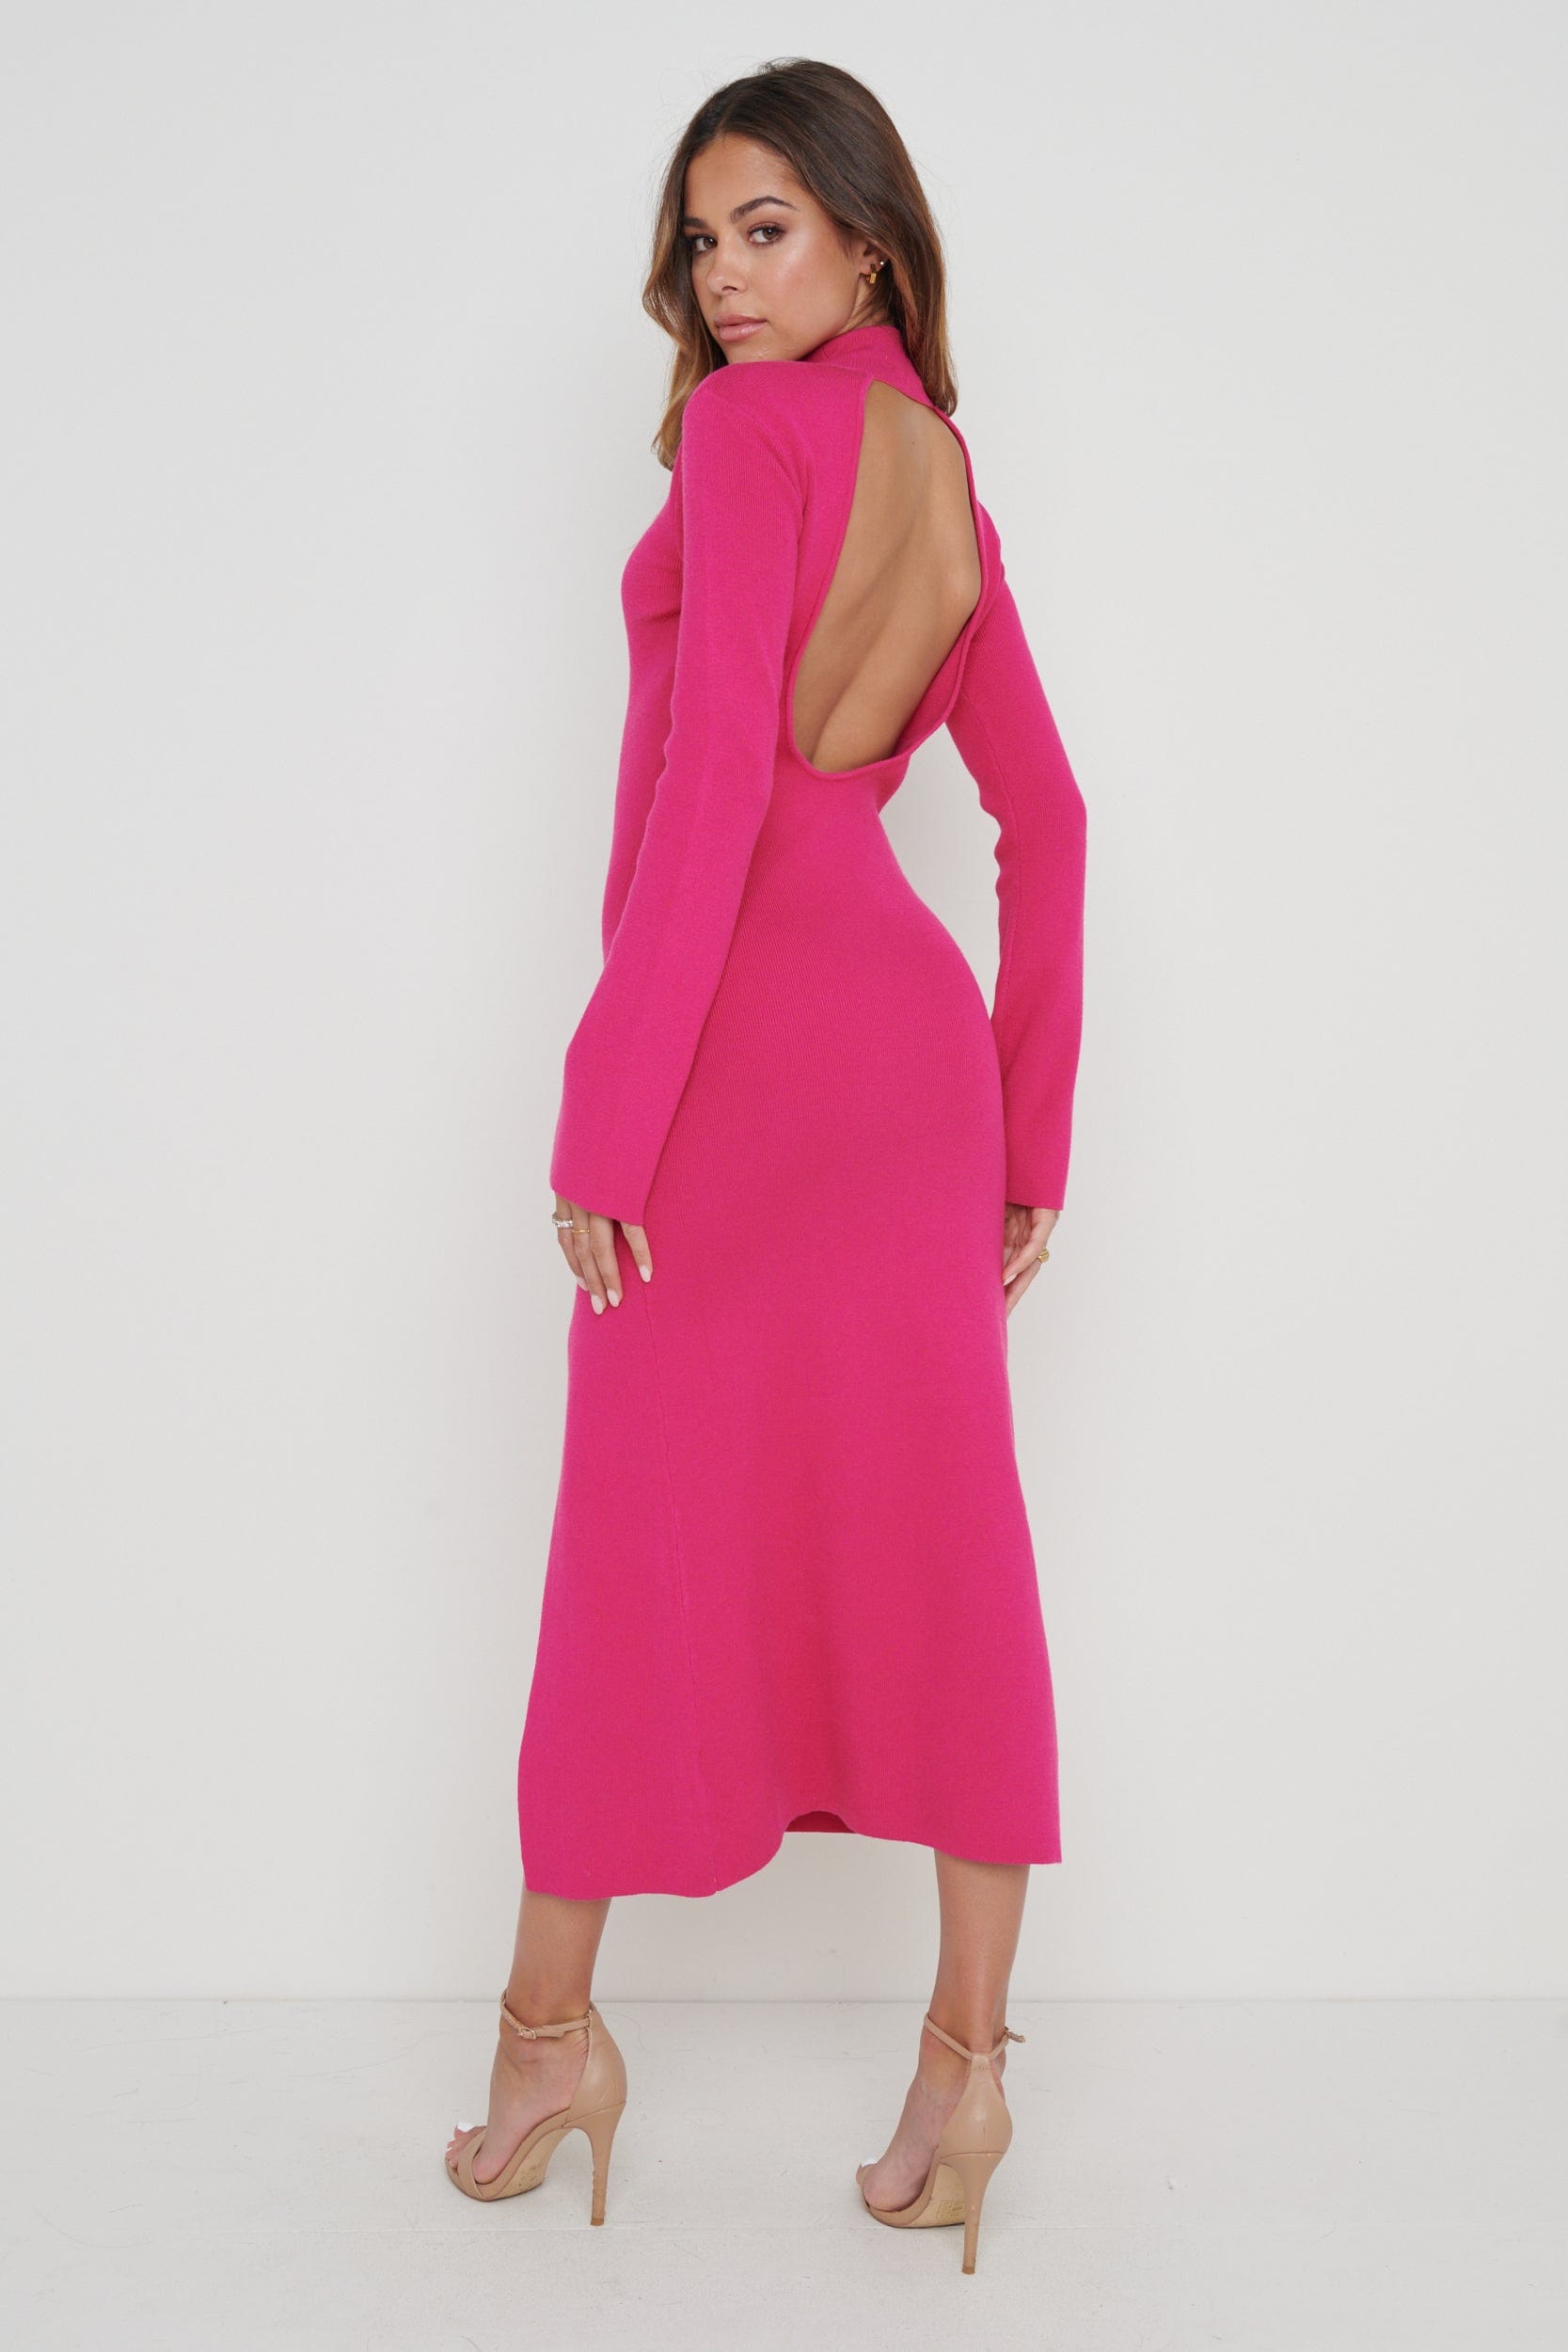 Brielle High Neck Midaxi Knit Dress - Pink, S